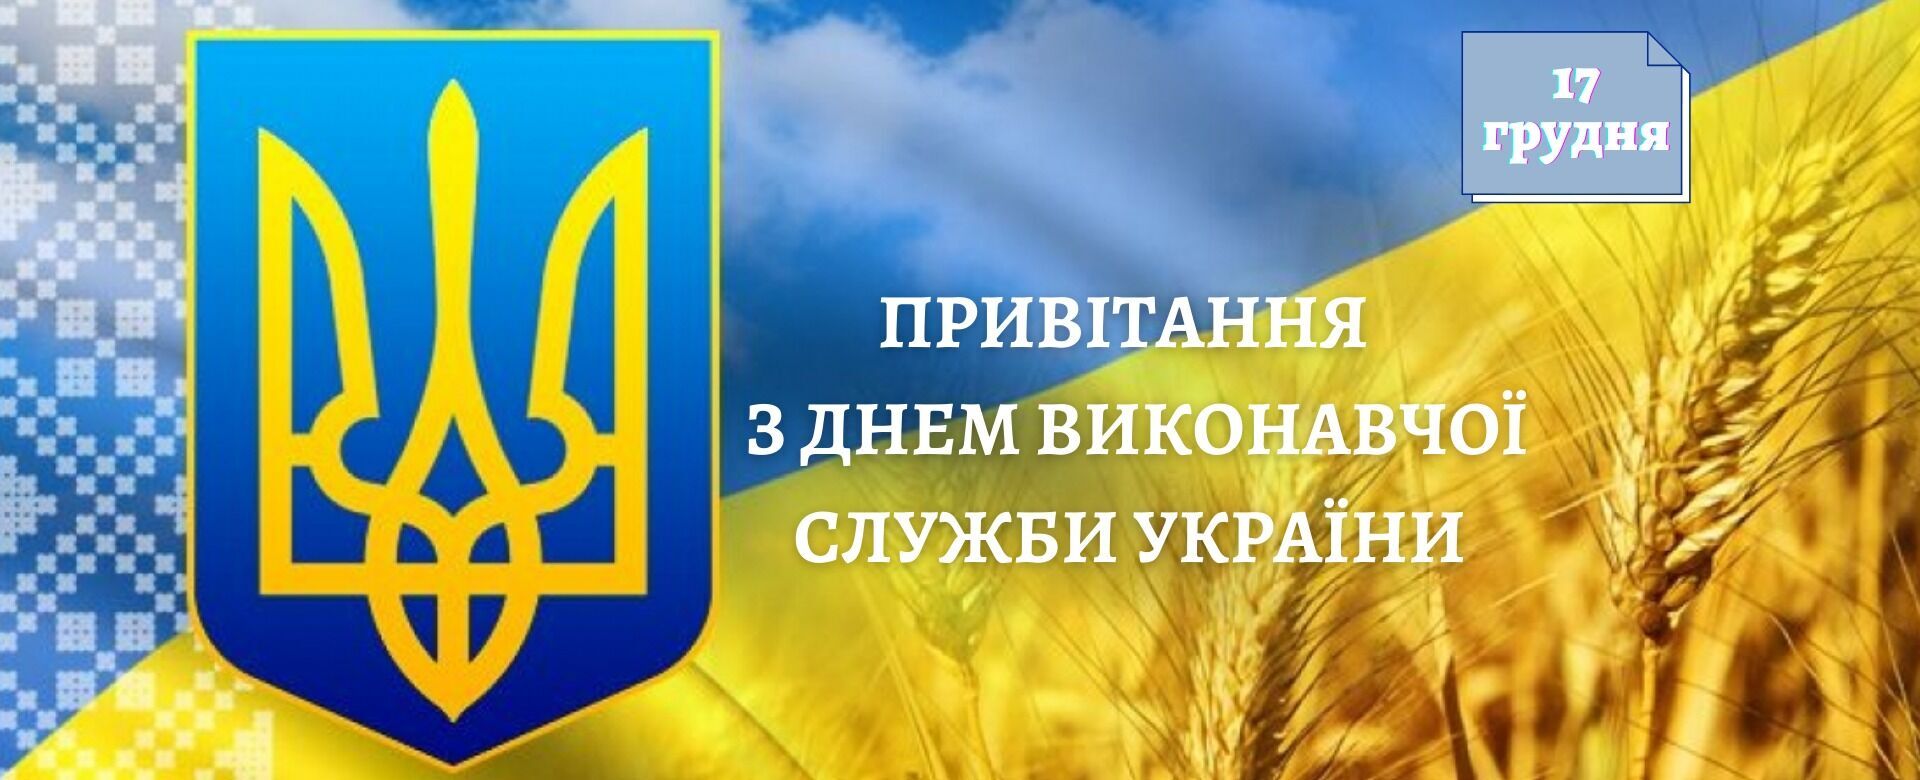 Листівка в День працівника виконавчої служби України